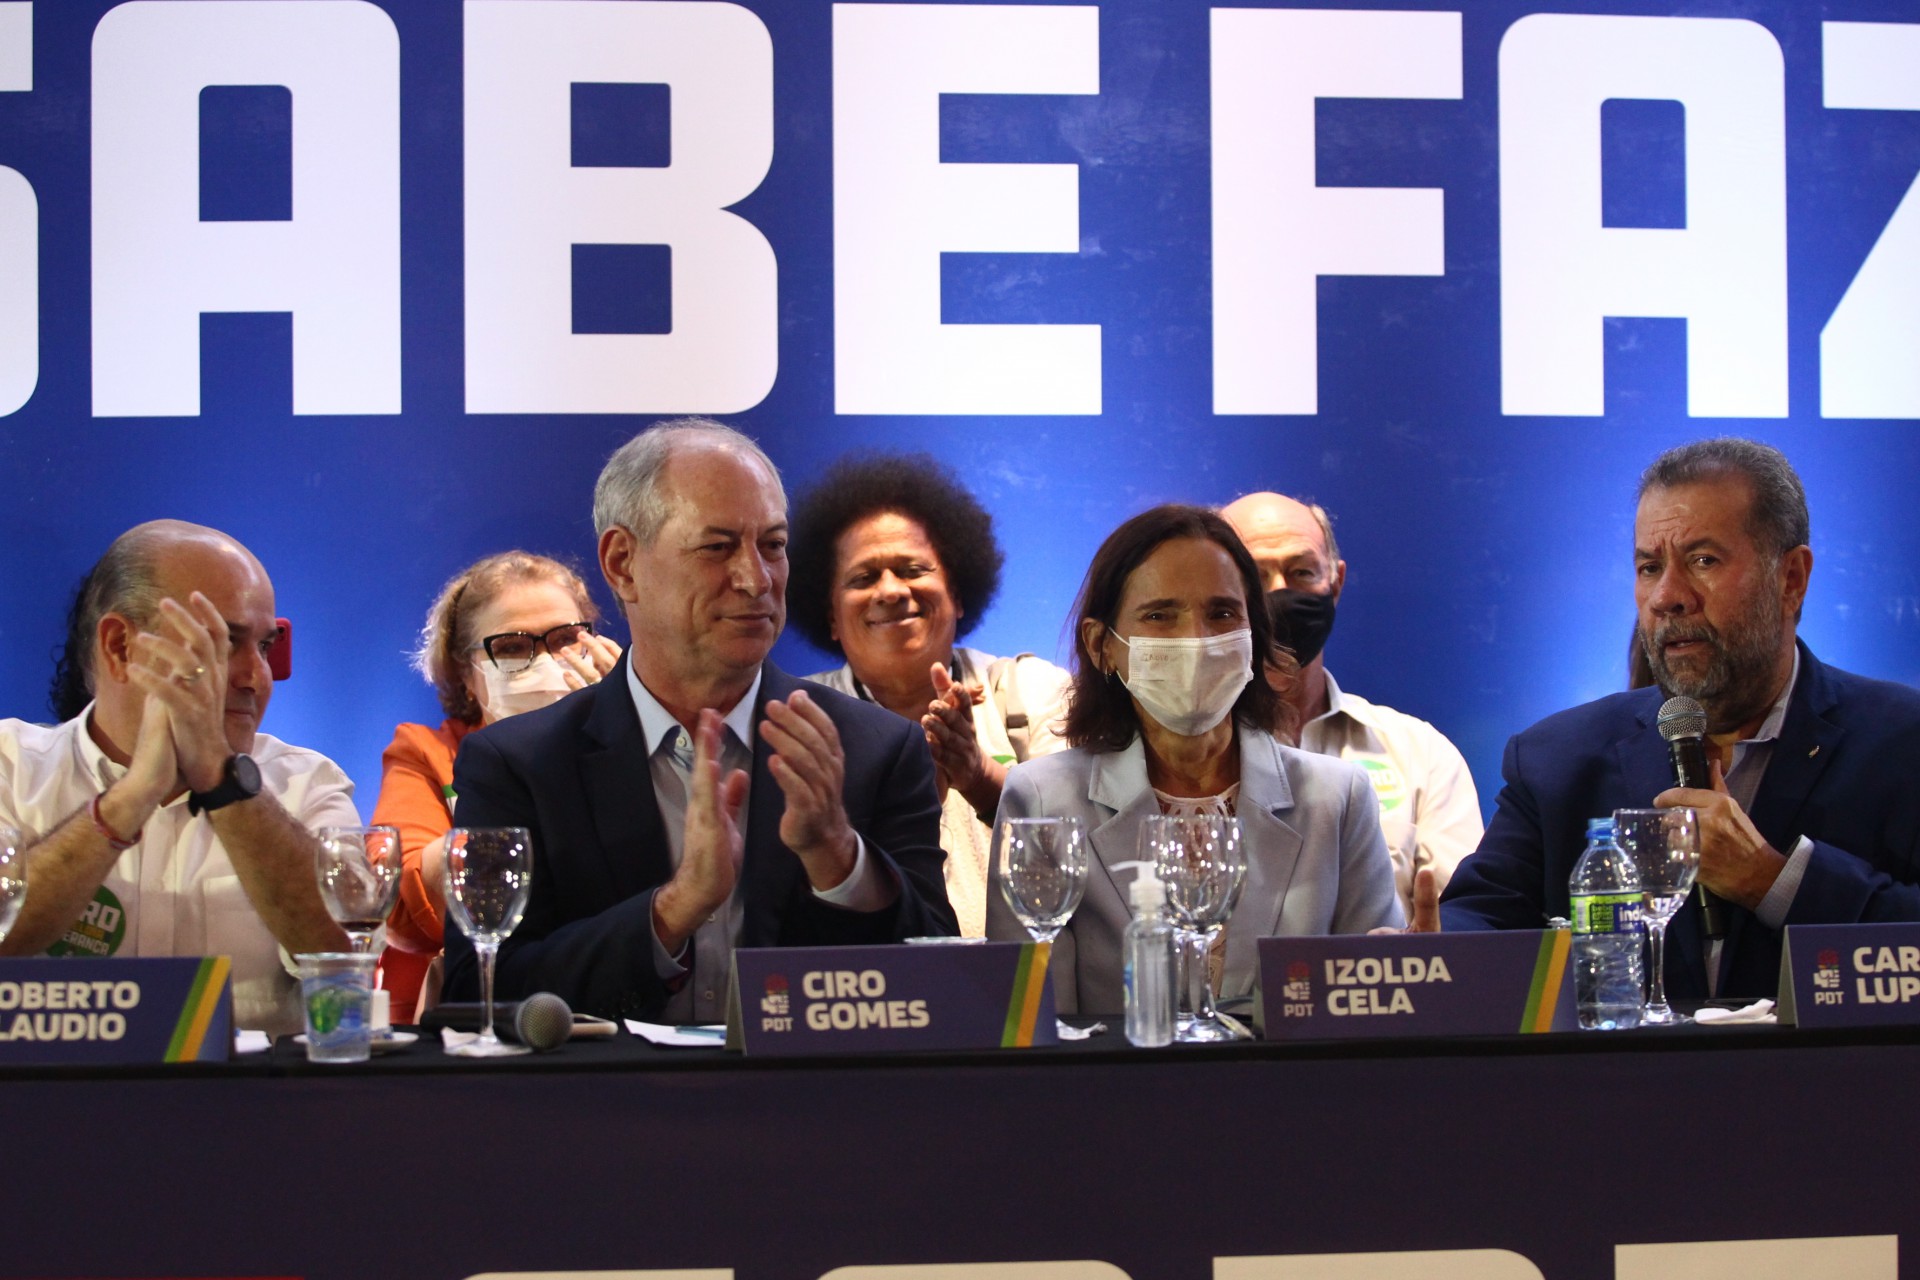 ￼Roberto Cláudio e Izolda na mesa com Ciro Gomes e Carlos Lupi quando ainda existia a aliança do PDT com o PT (Foto: FABIO LIMA)